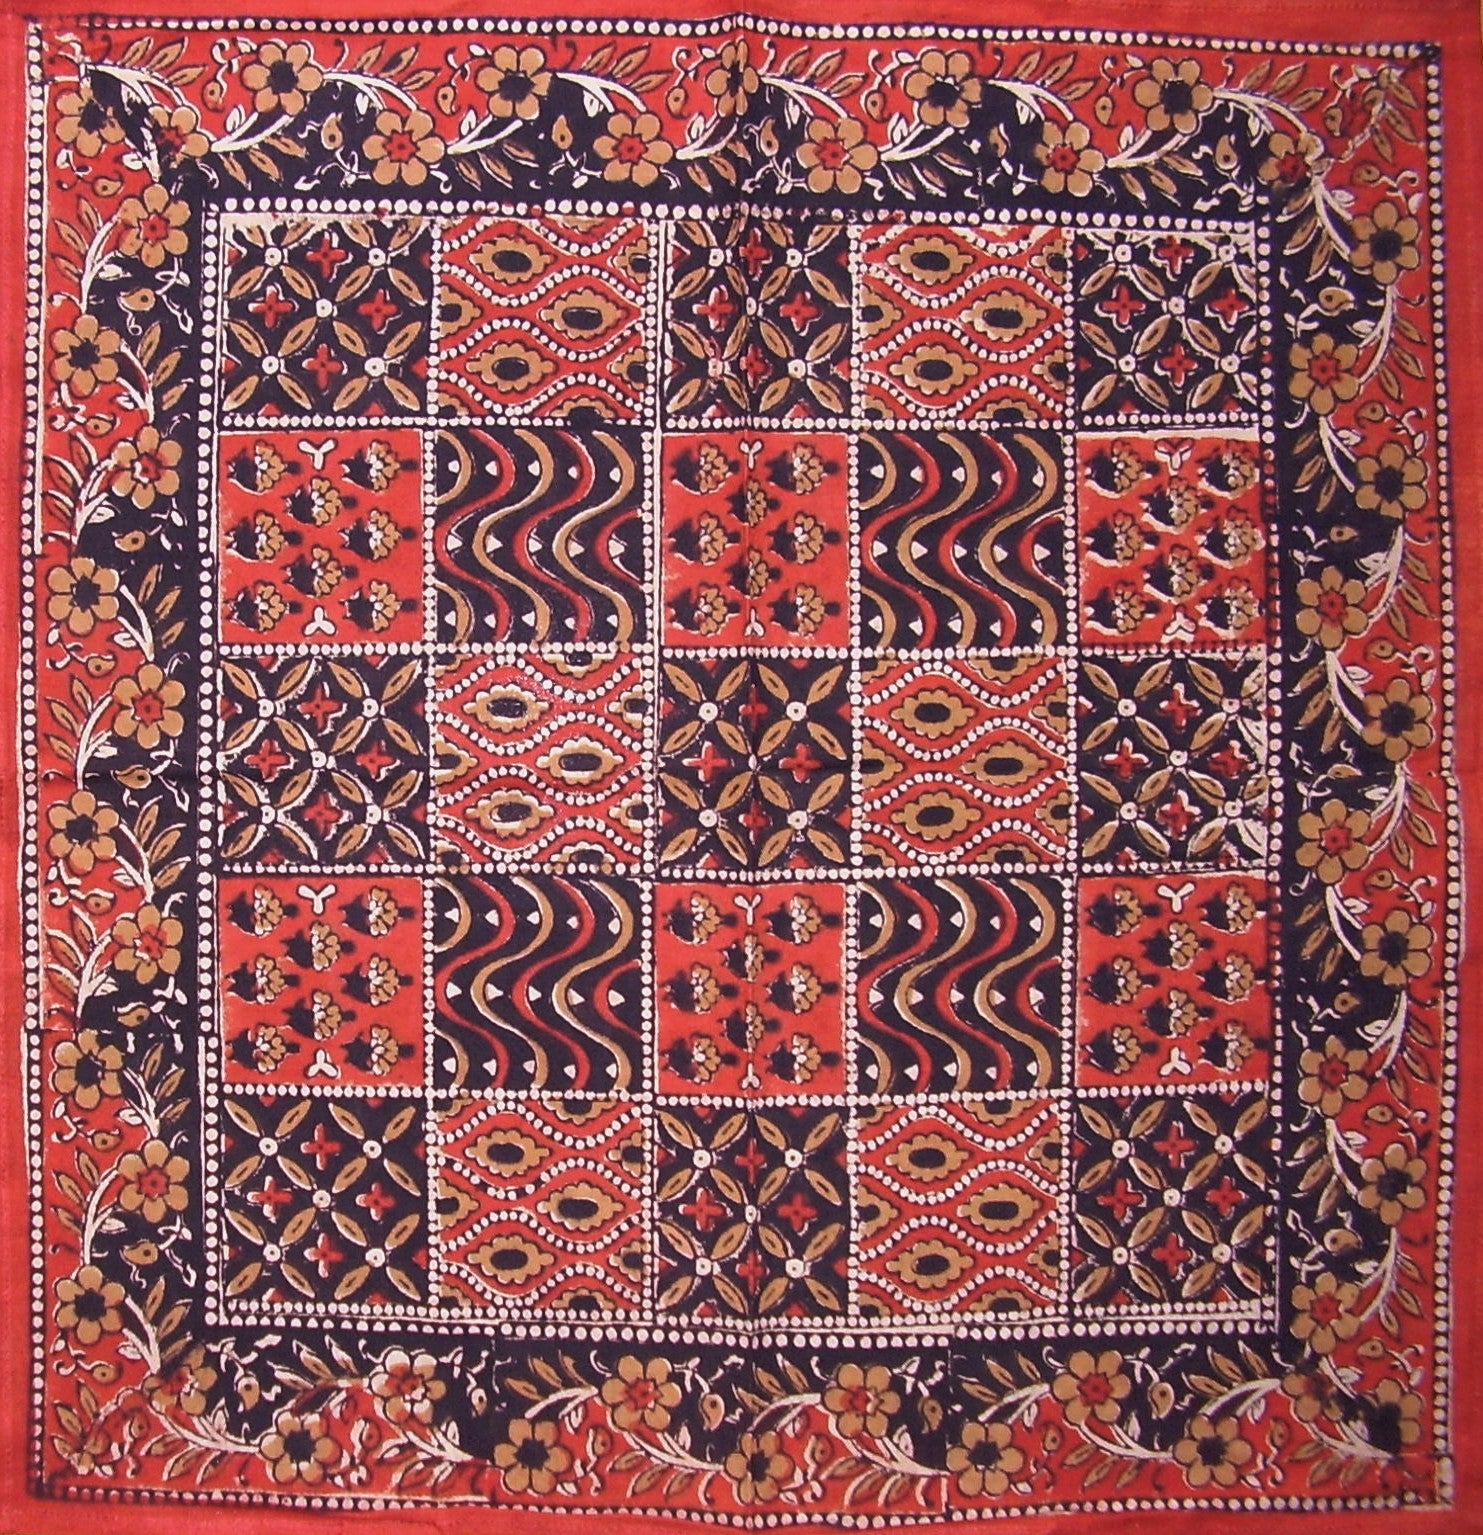 Kalamkari Blockdruck-Tischserviette aus Baumwolle, 50,8 x 50,8 cm, Rot 